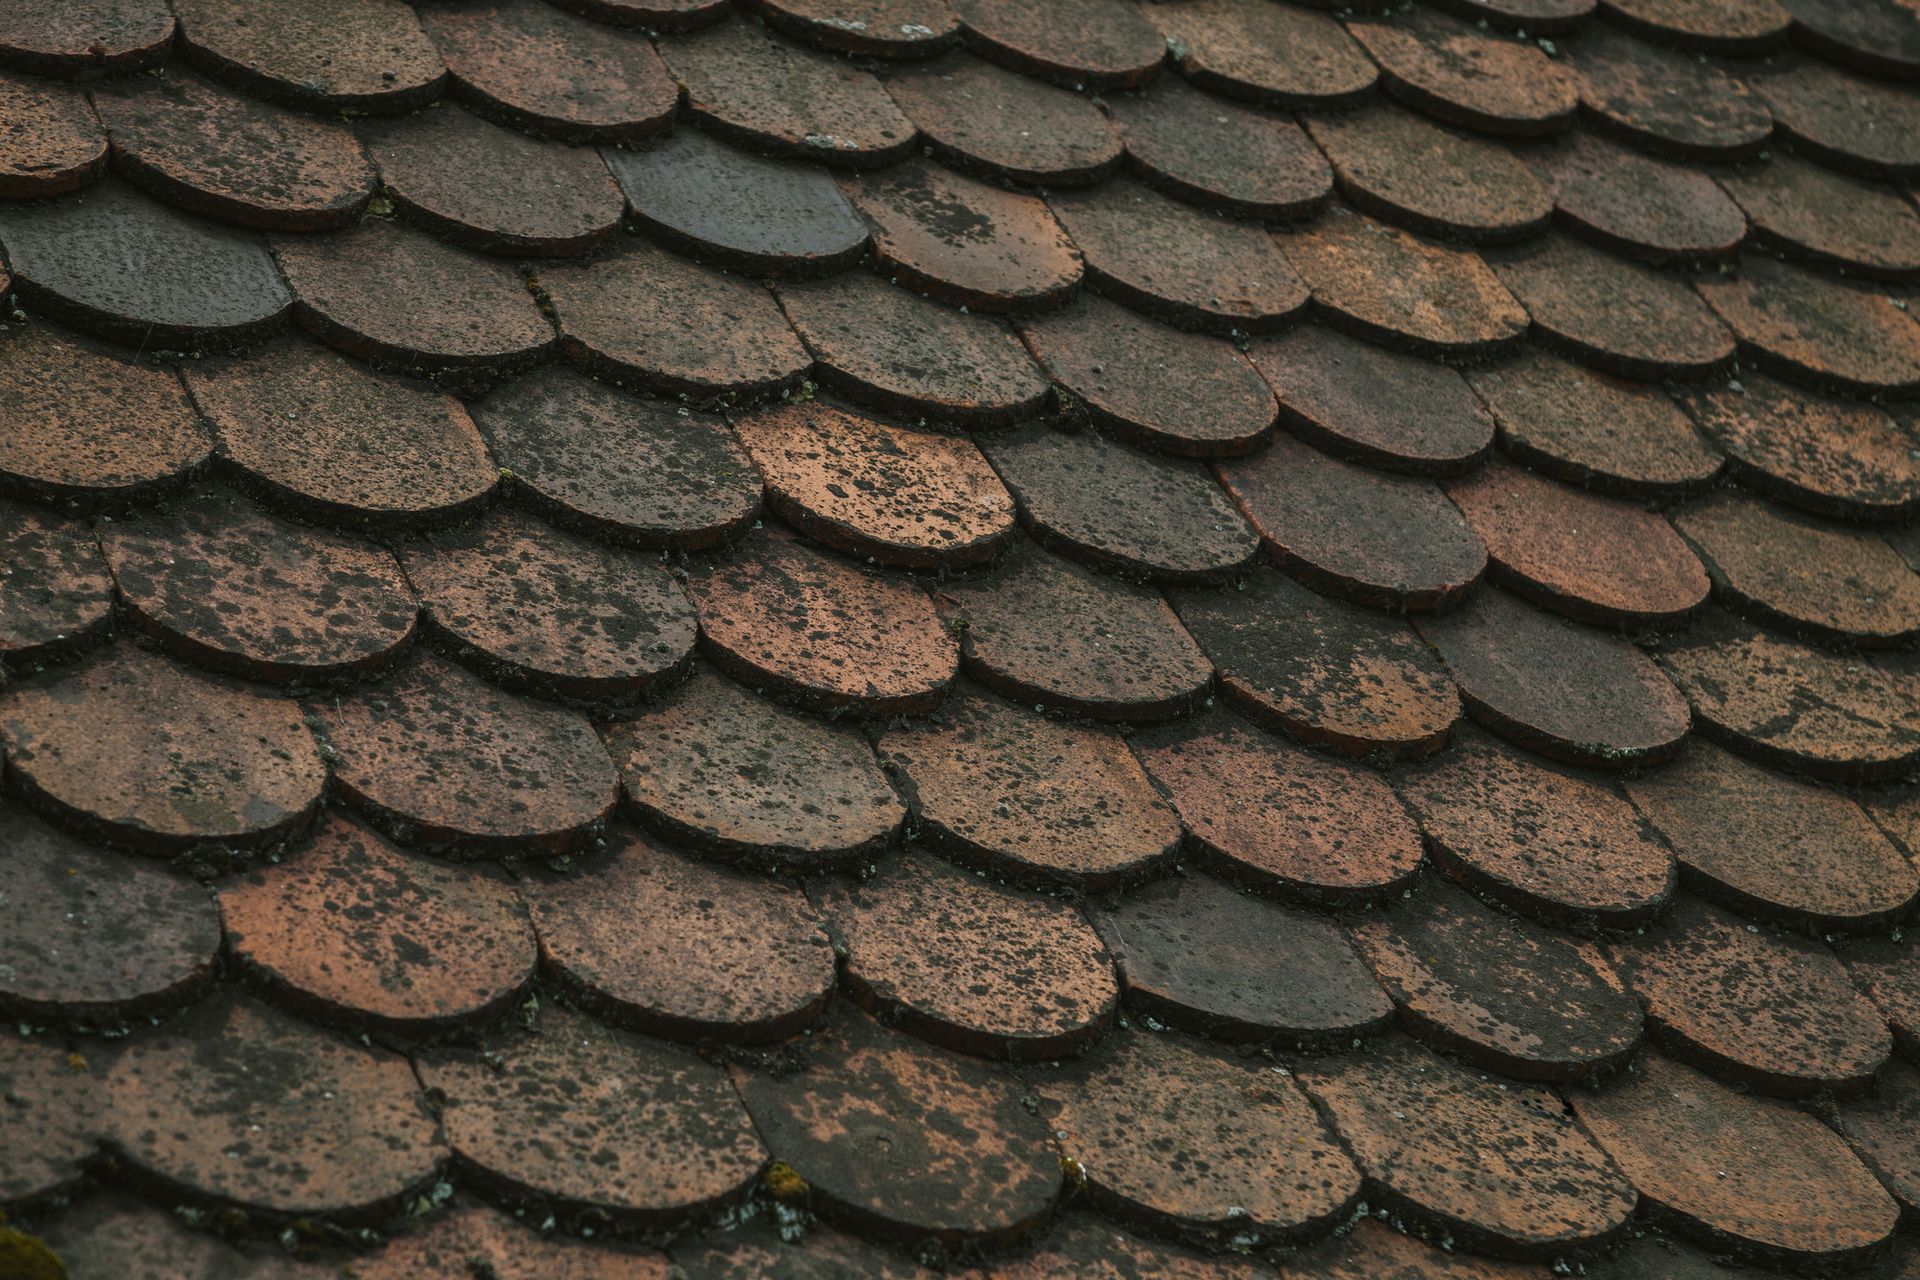 A close up of a roof with a lot of tiles on it.